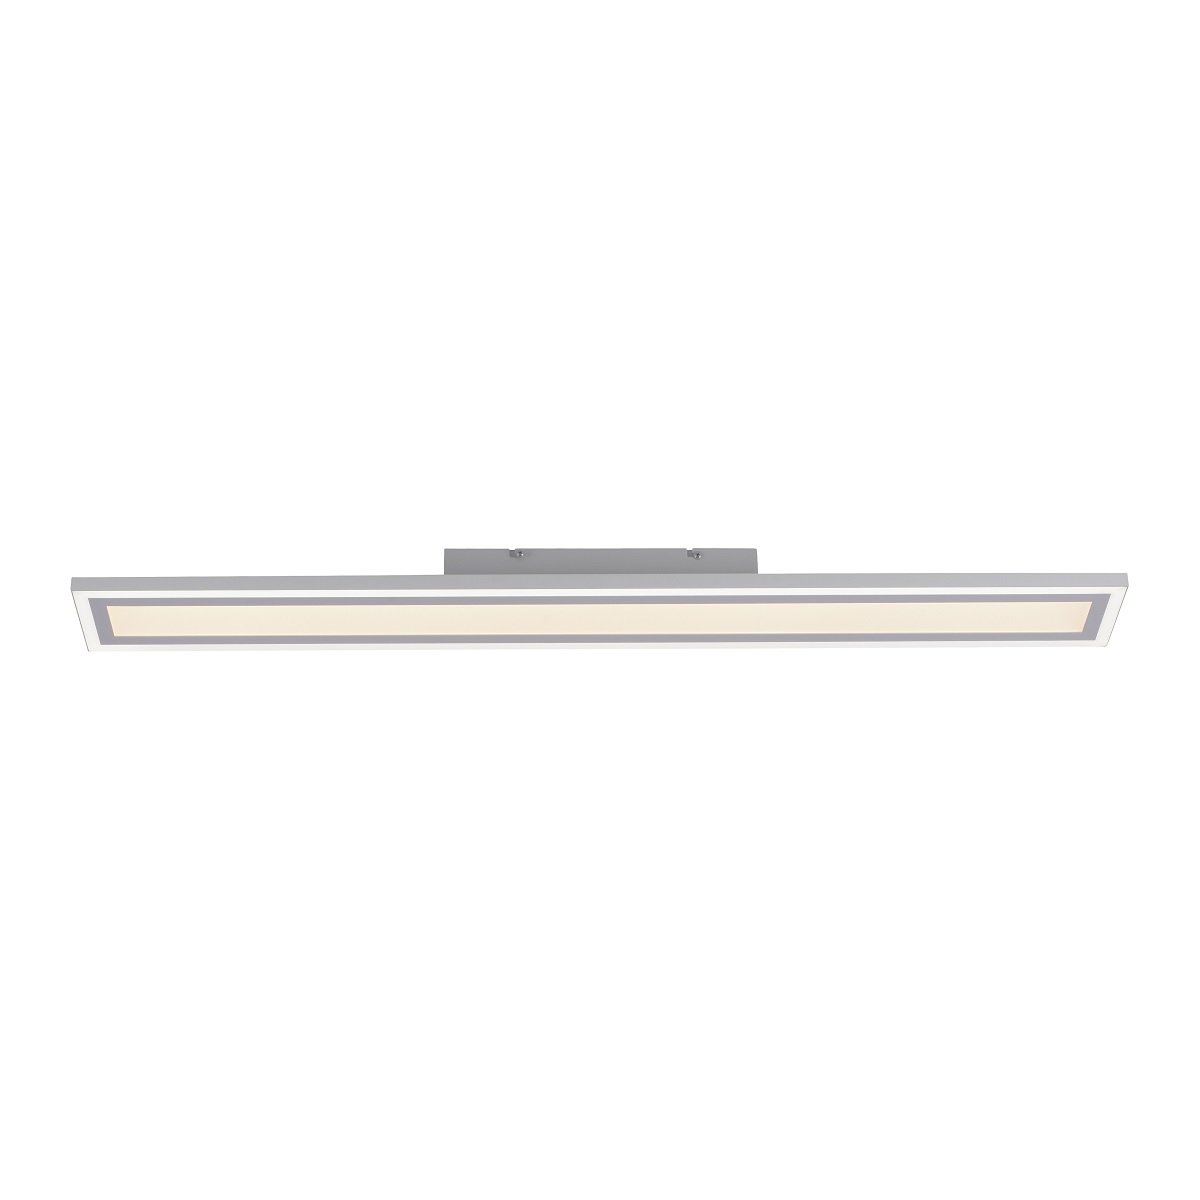 Leuchten Direkt & Lampen eckig weiß Panel Shop Edging Leuchten online kaufen LED 14853-16 im 100x12cm 